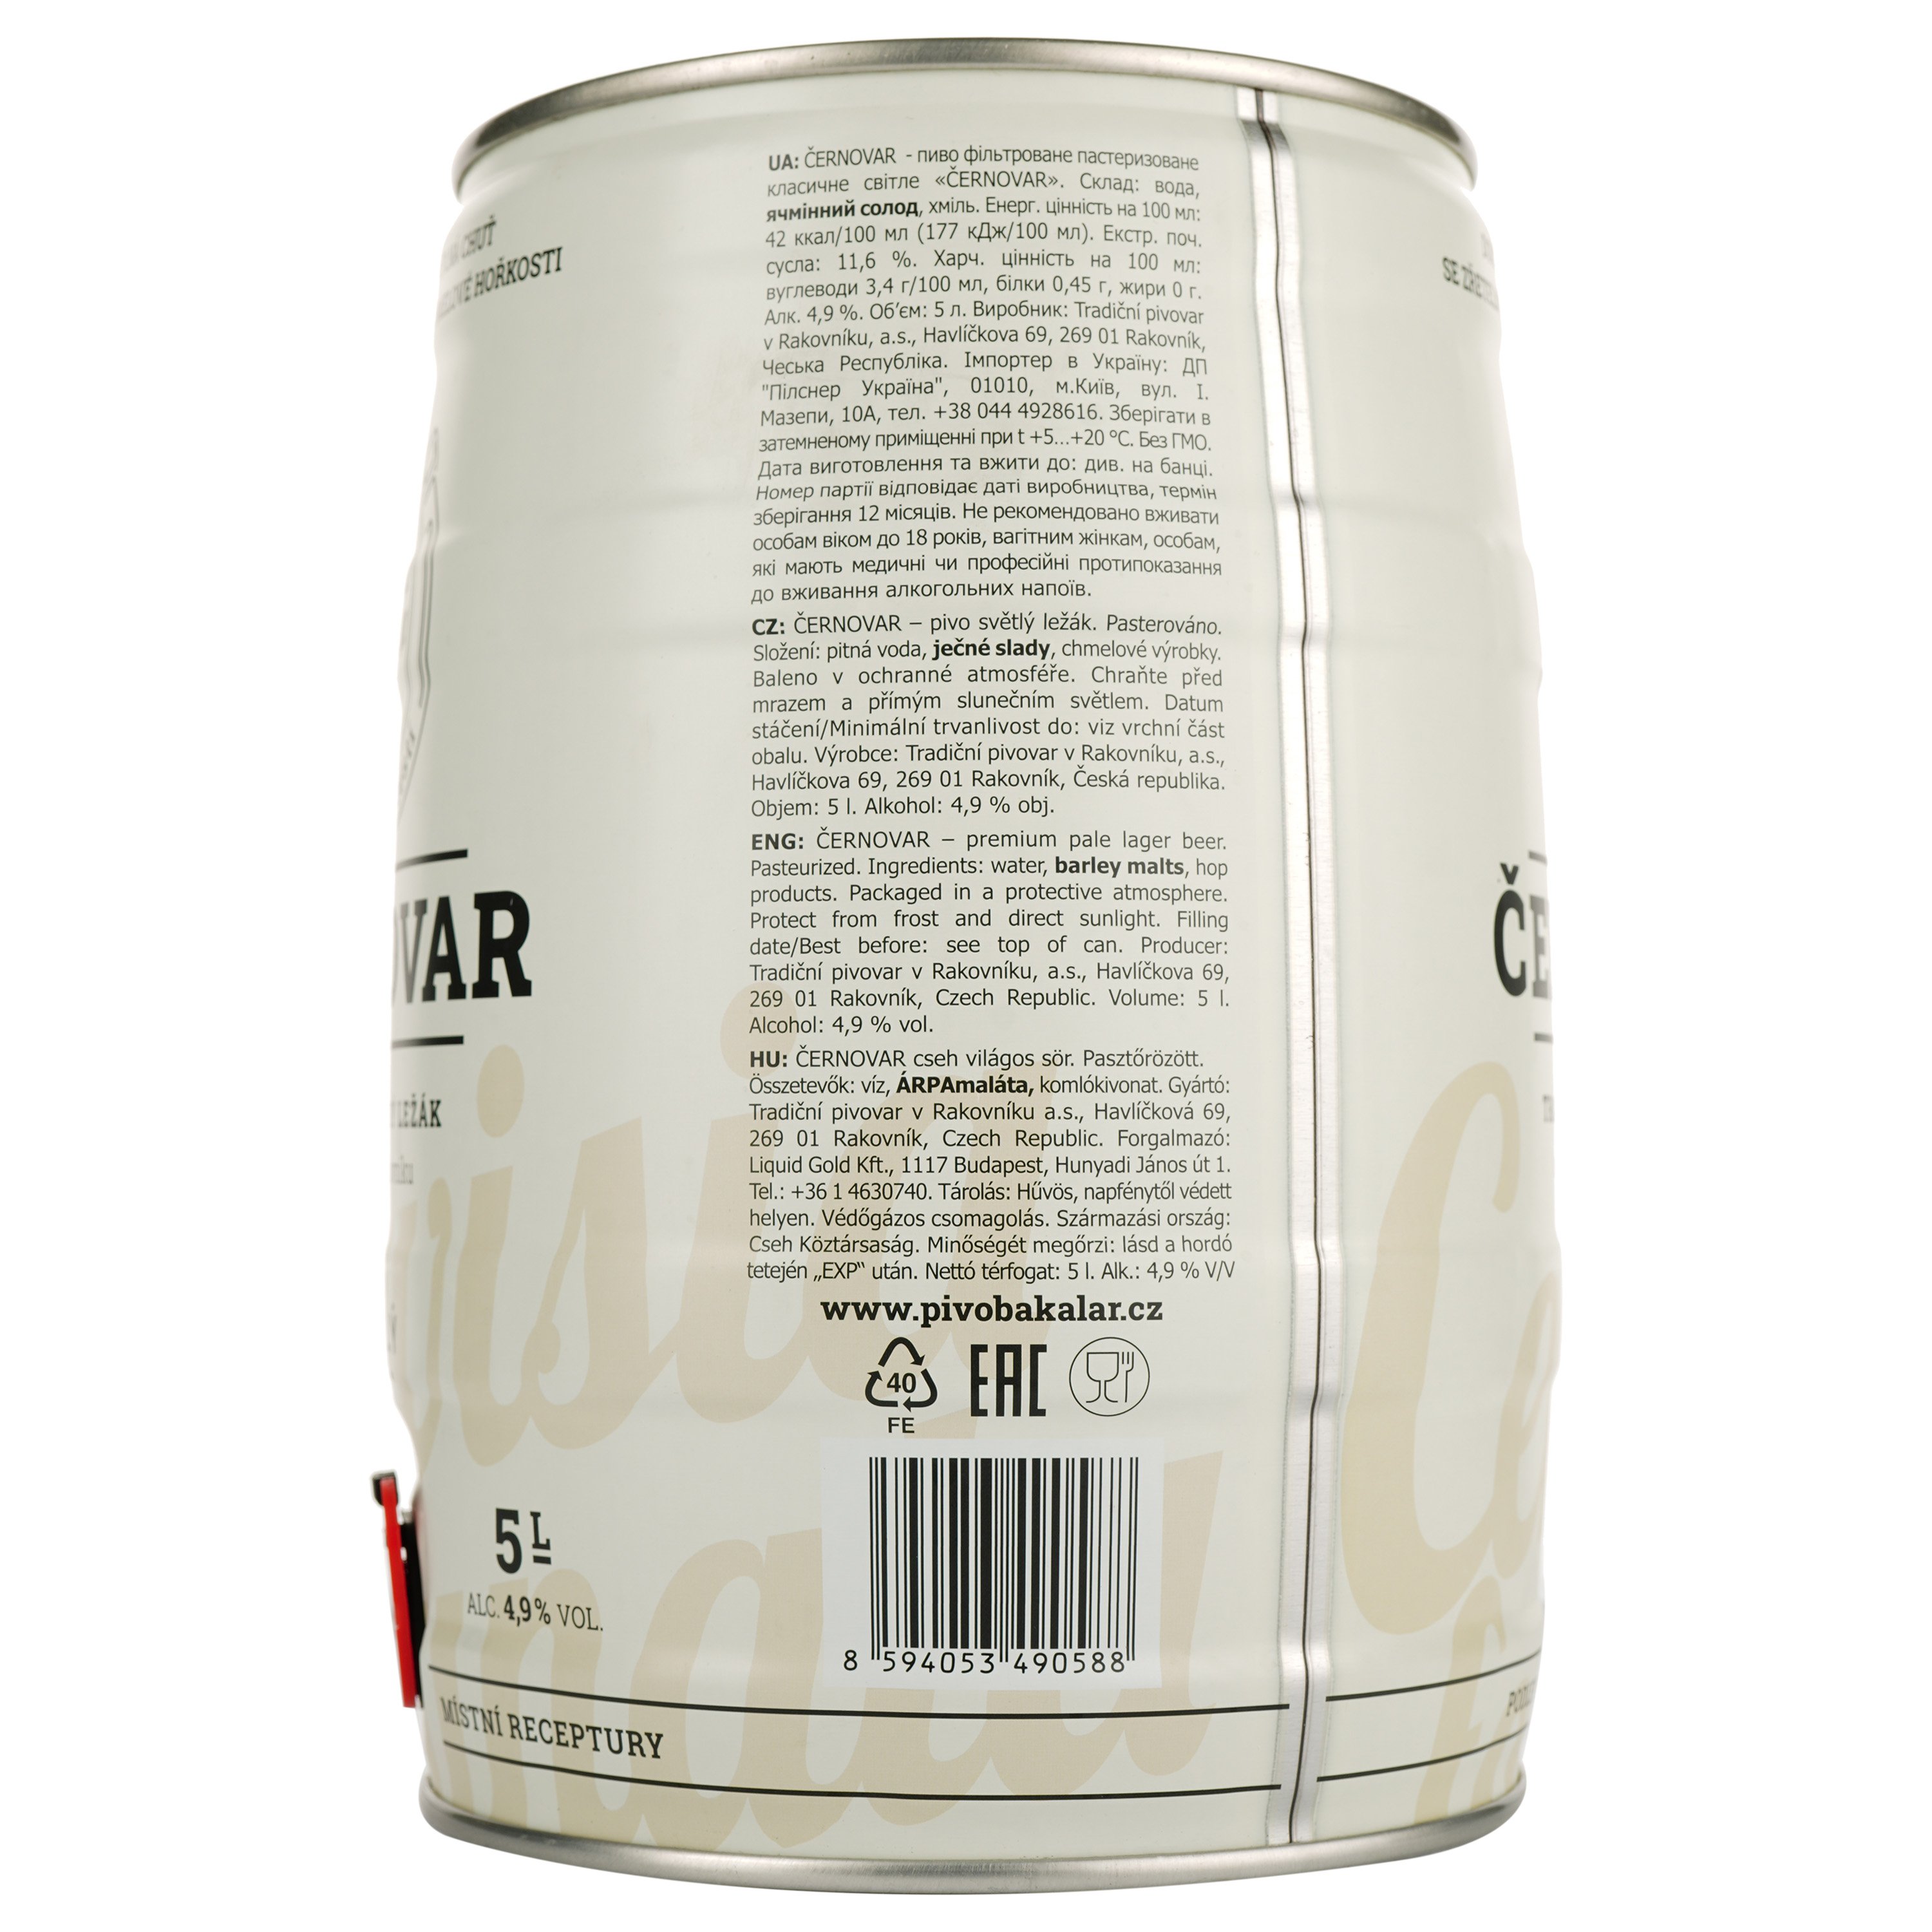 Пиво Cernovar светлое, 4.9%, ж/б, 5 л - фото 2